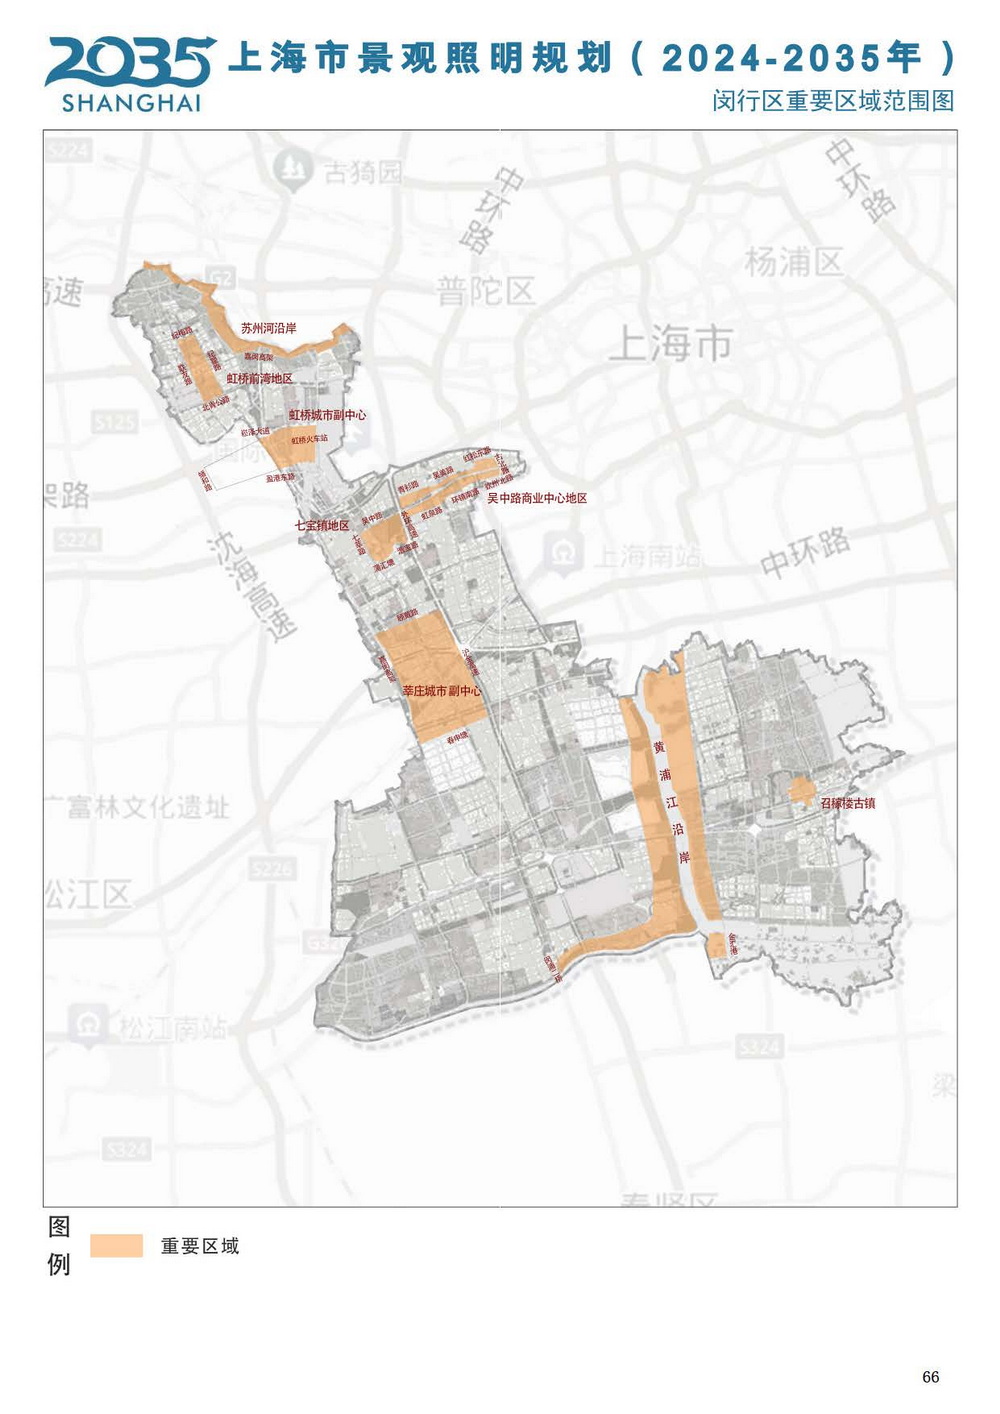 《上海市景观照明规划（2024-2035年）》_页面_68.jpg